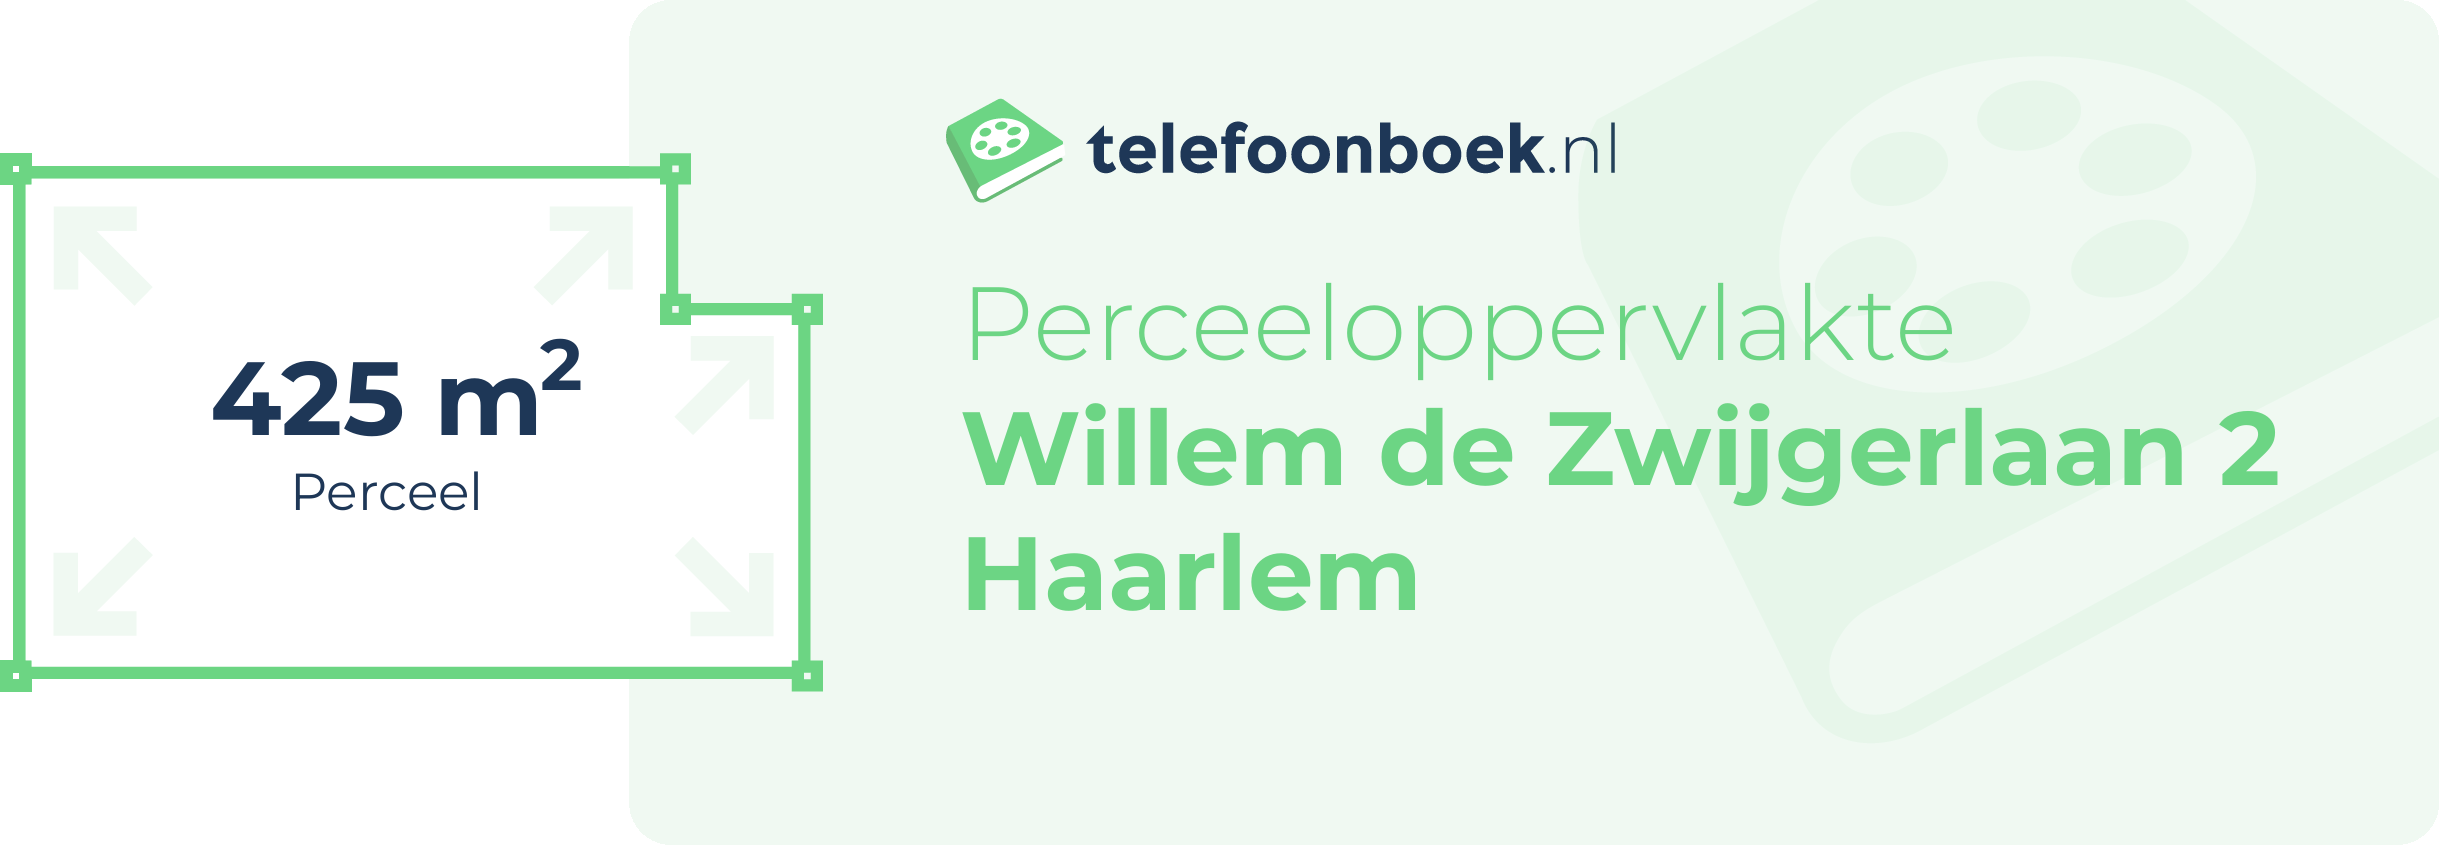 Perceeloppervlakte Willem De Zwijgerlaan 2 Haarlem